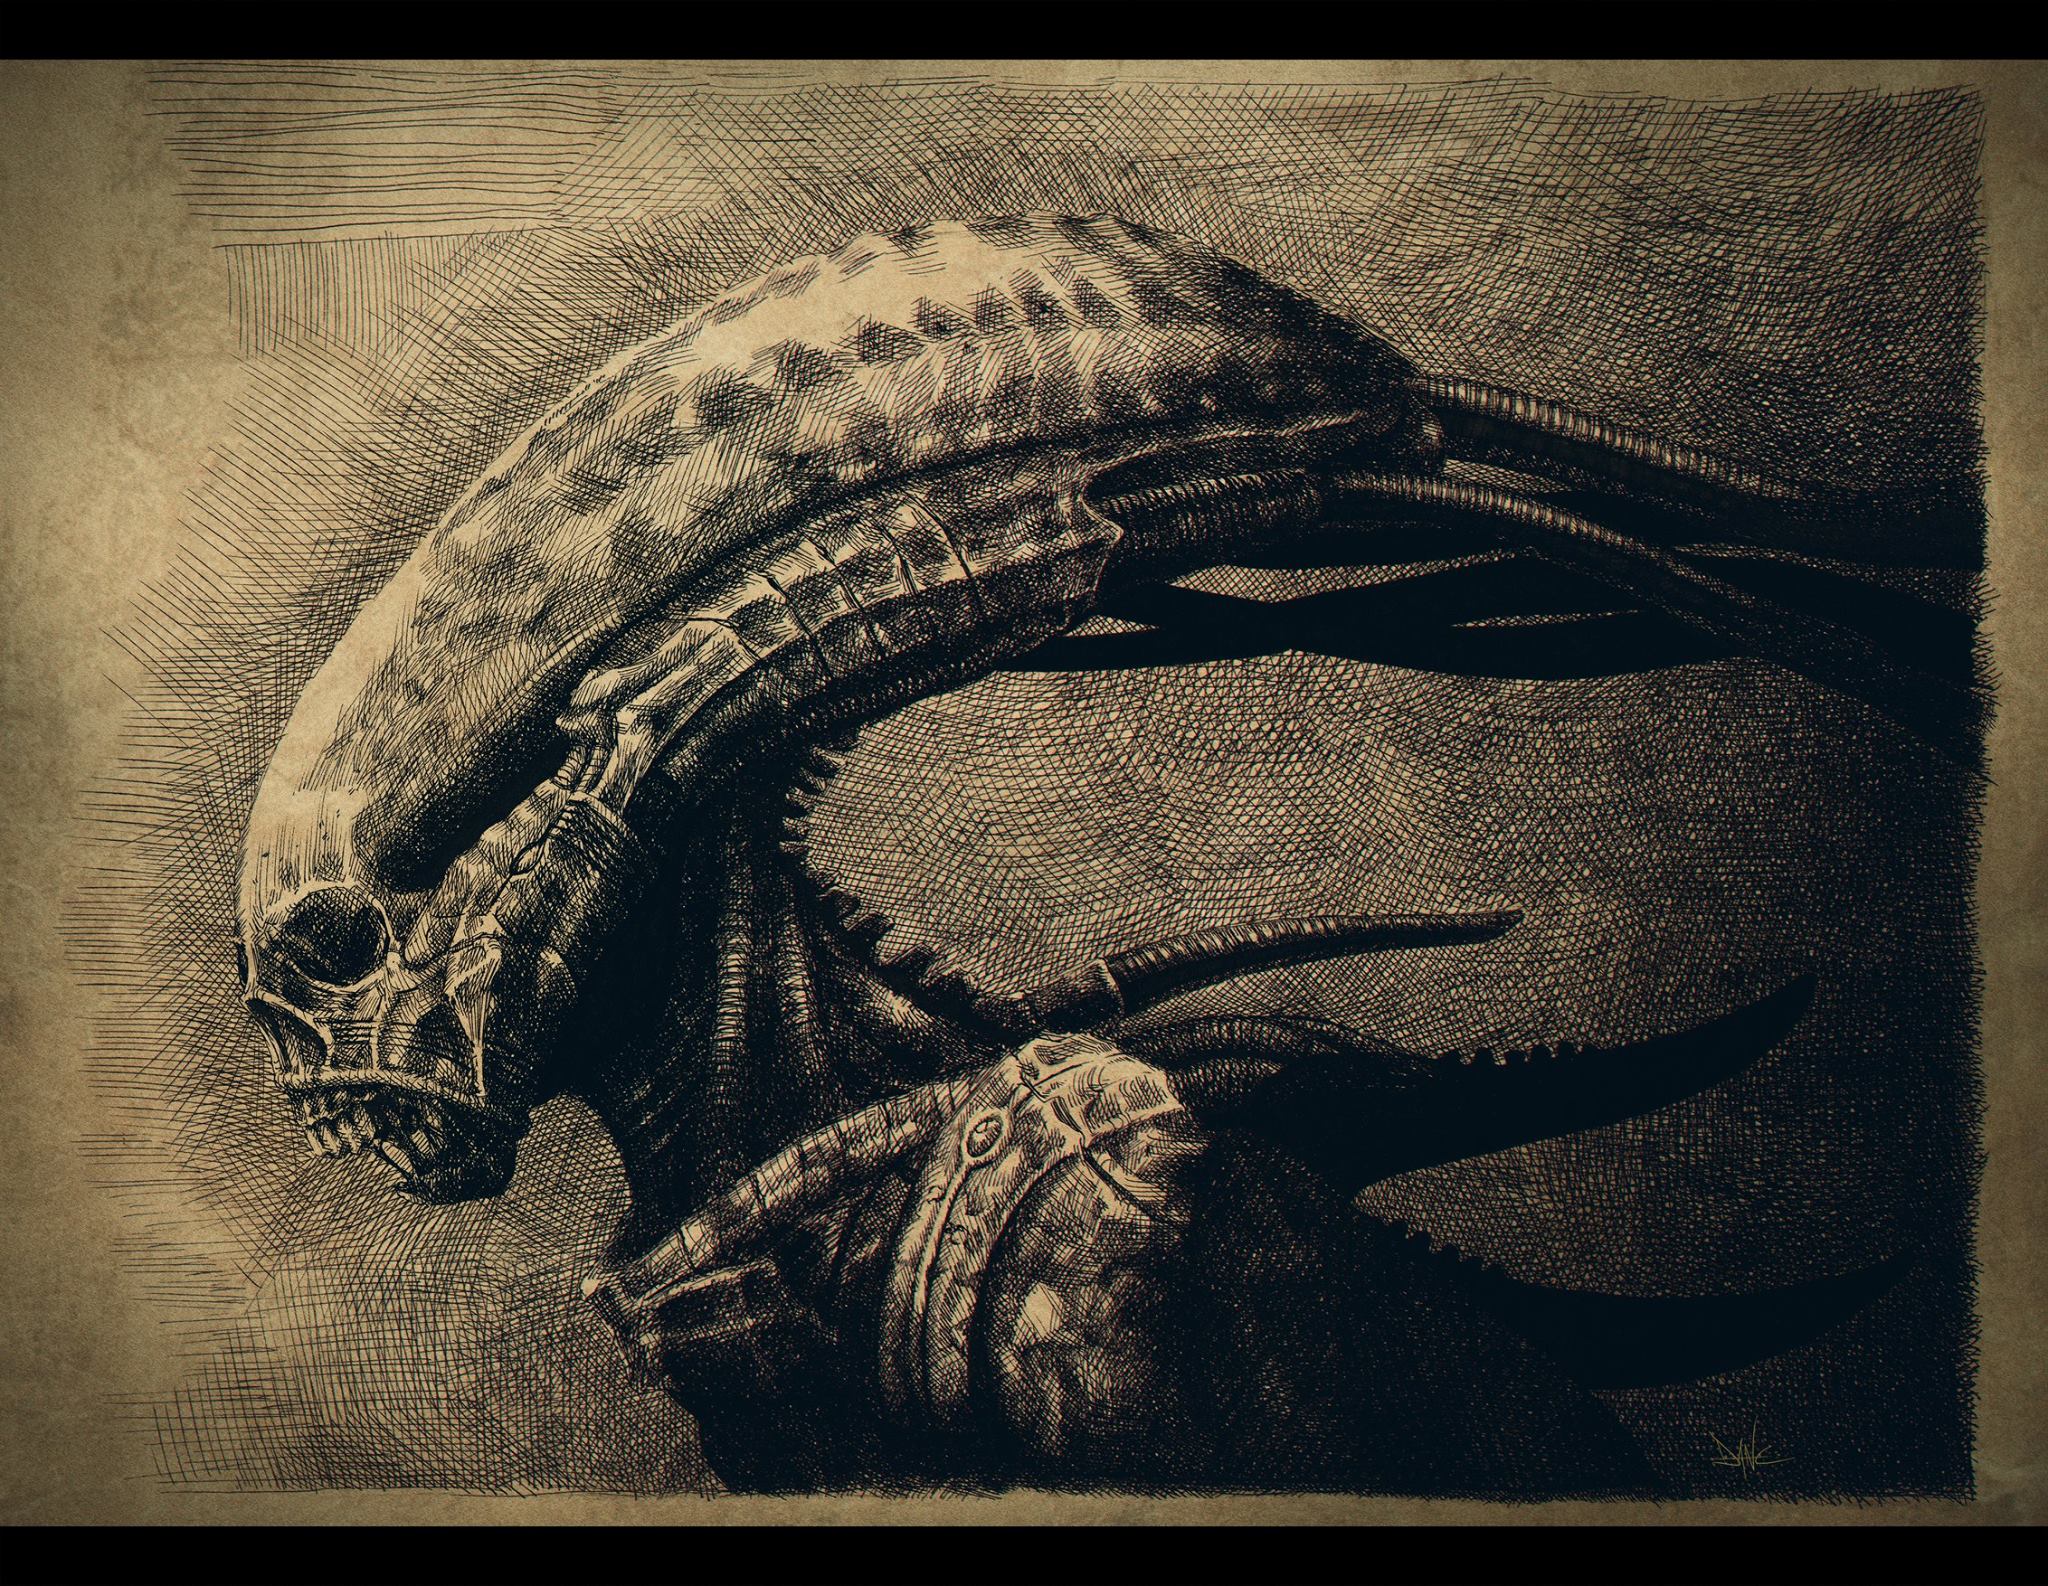  Dane Hallett & Matt Hatton Share Incredible Alien: Covenant Illustrations